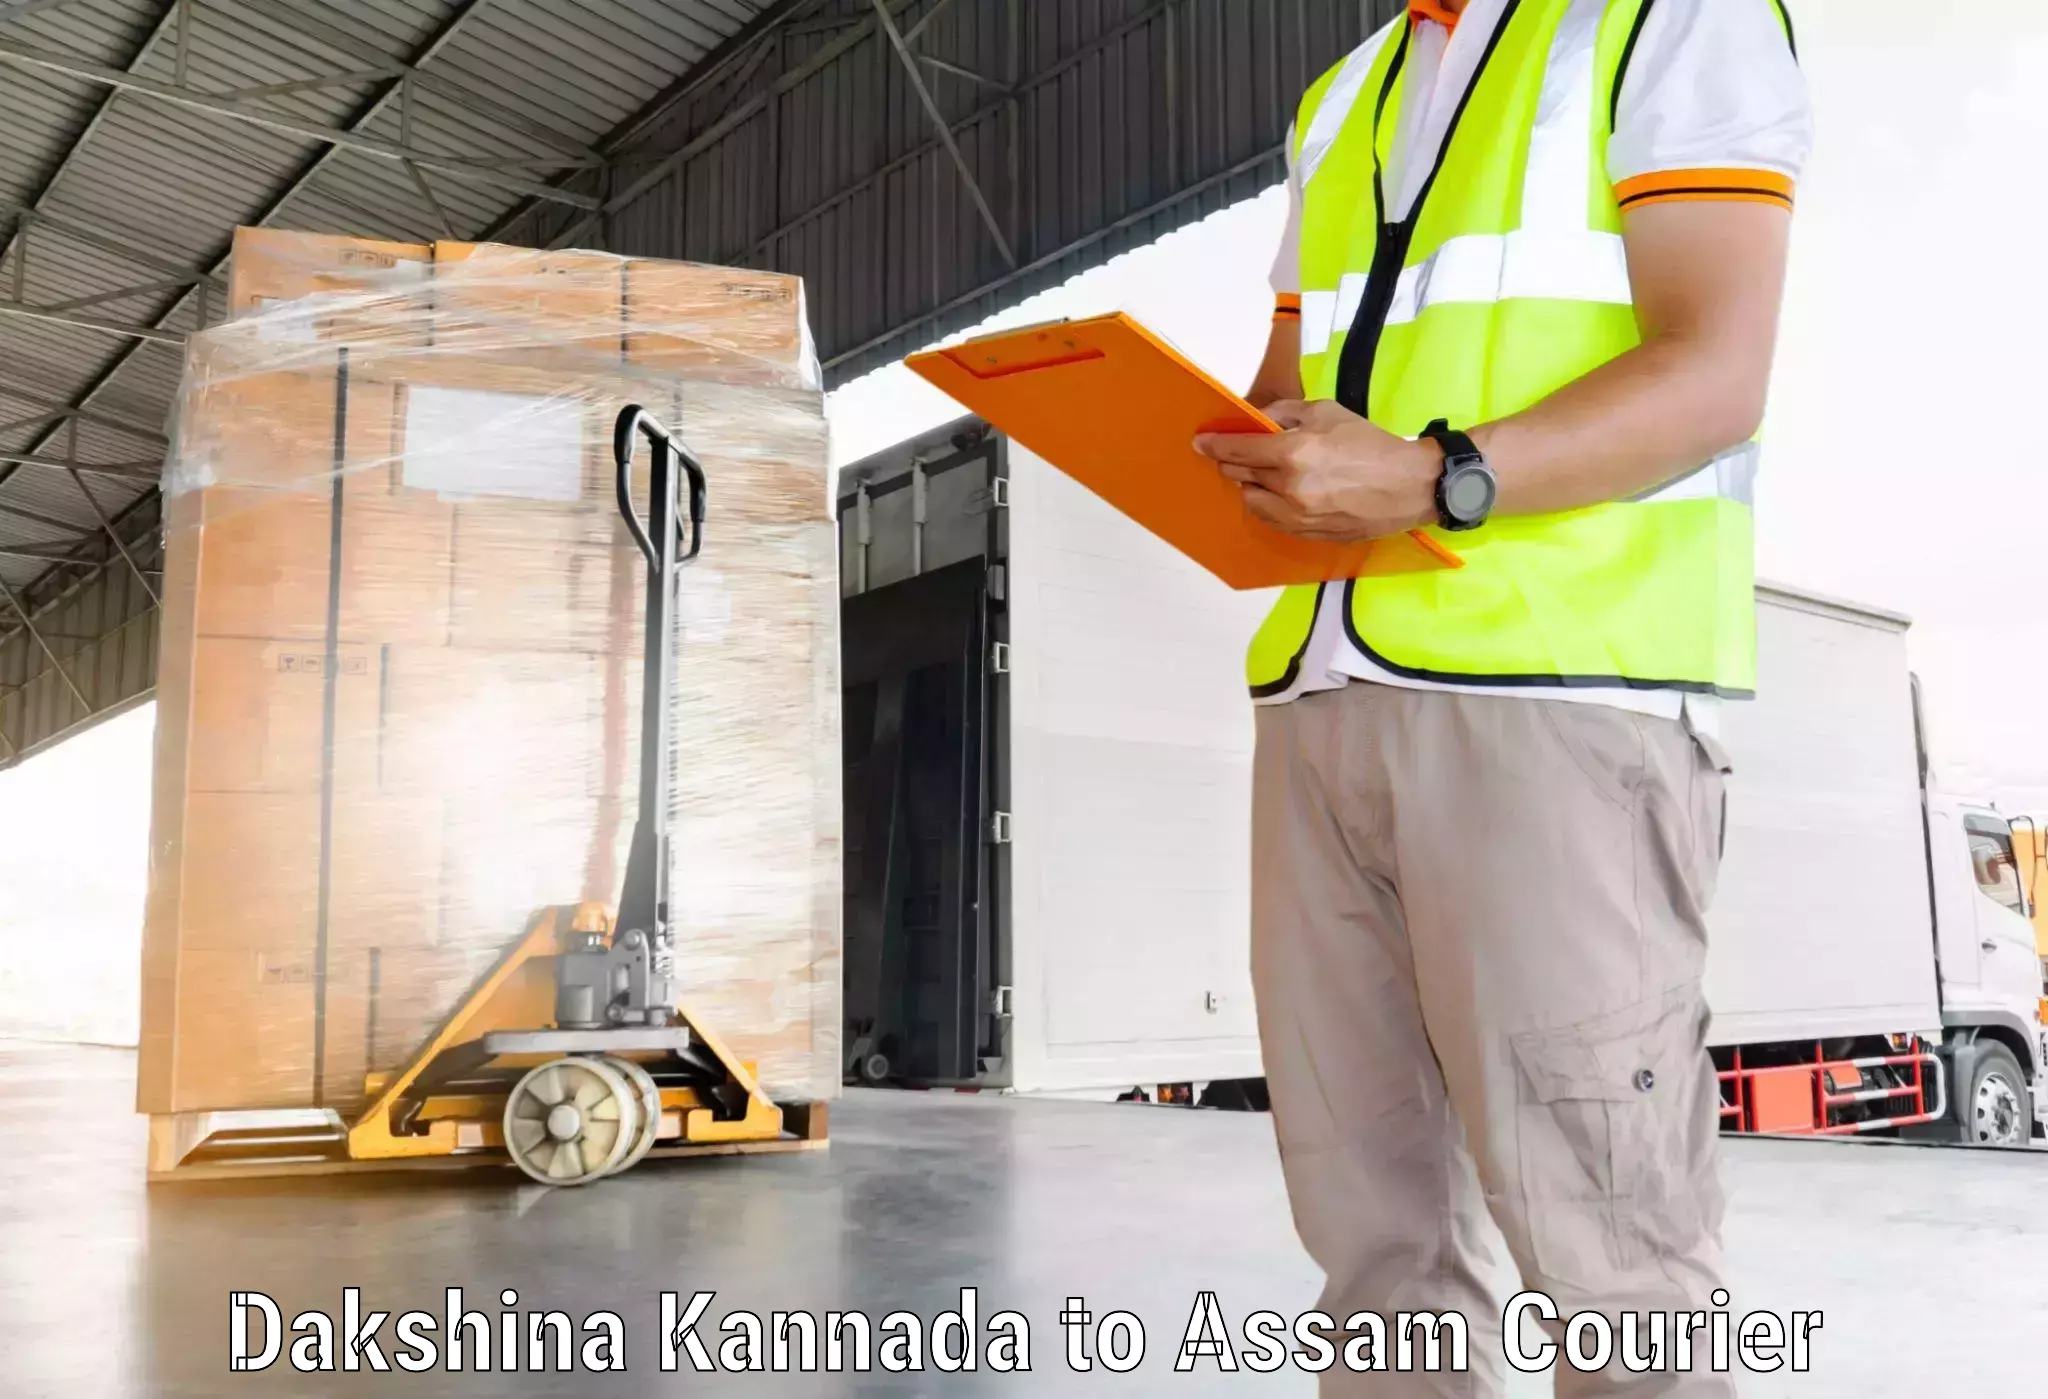 High-capacity parcel service Dakshina Kannada to Kalain